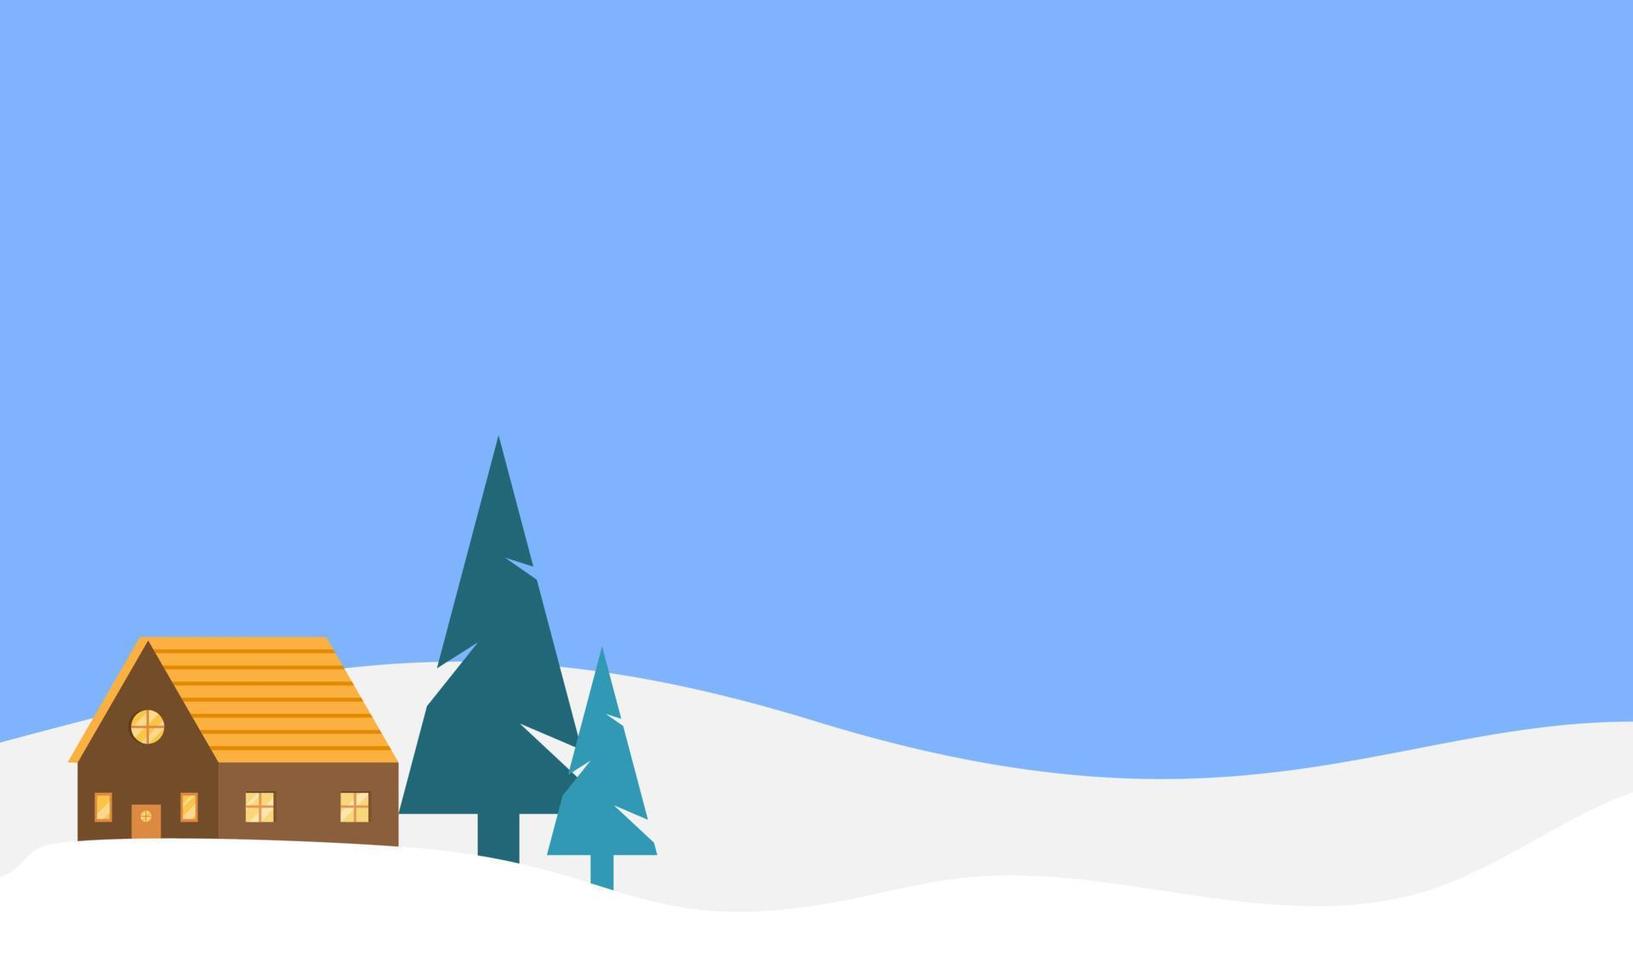 illustration de paysage d'hiver avec pins, nuages et maison. papier peint d'hiver avec un design de style plat. illustration d'hiver avec style cartoon. Bonjour l'hiver. vecteur